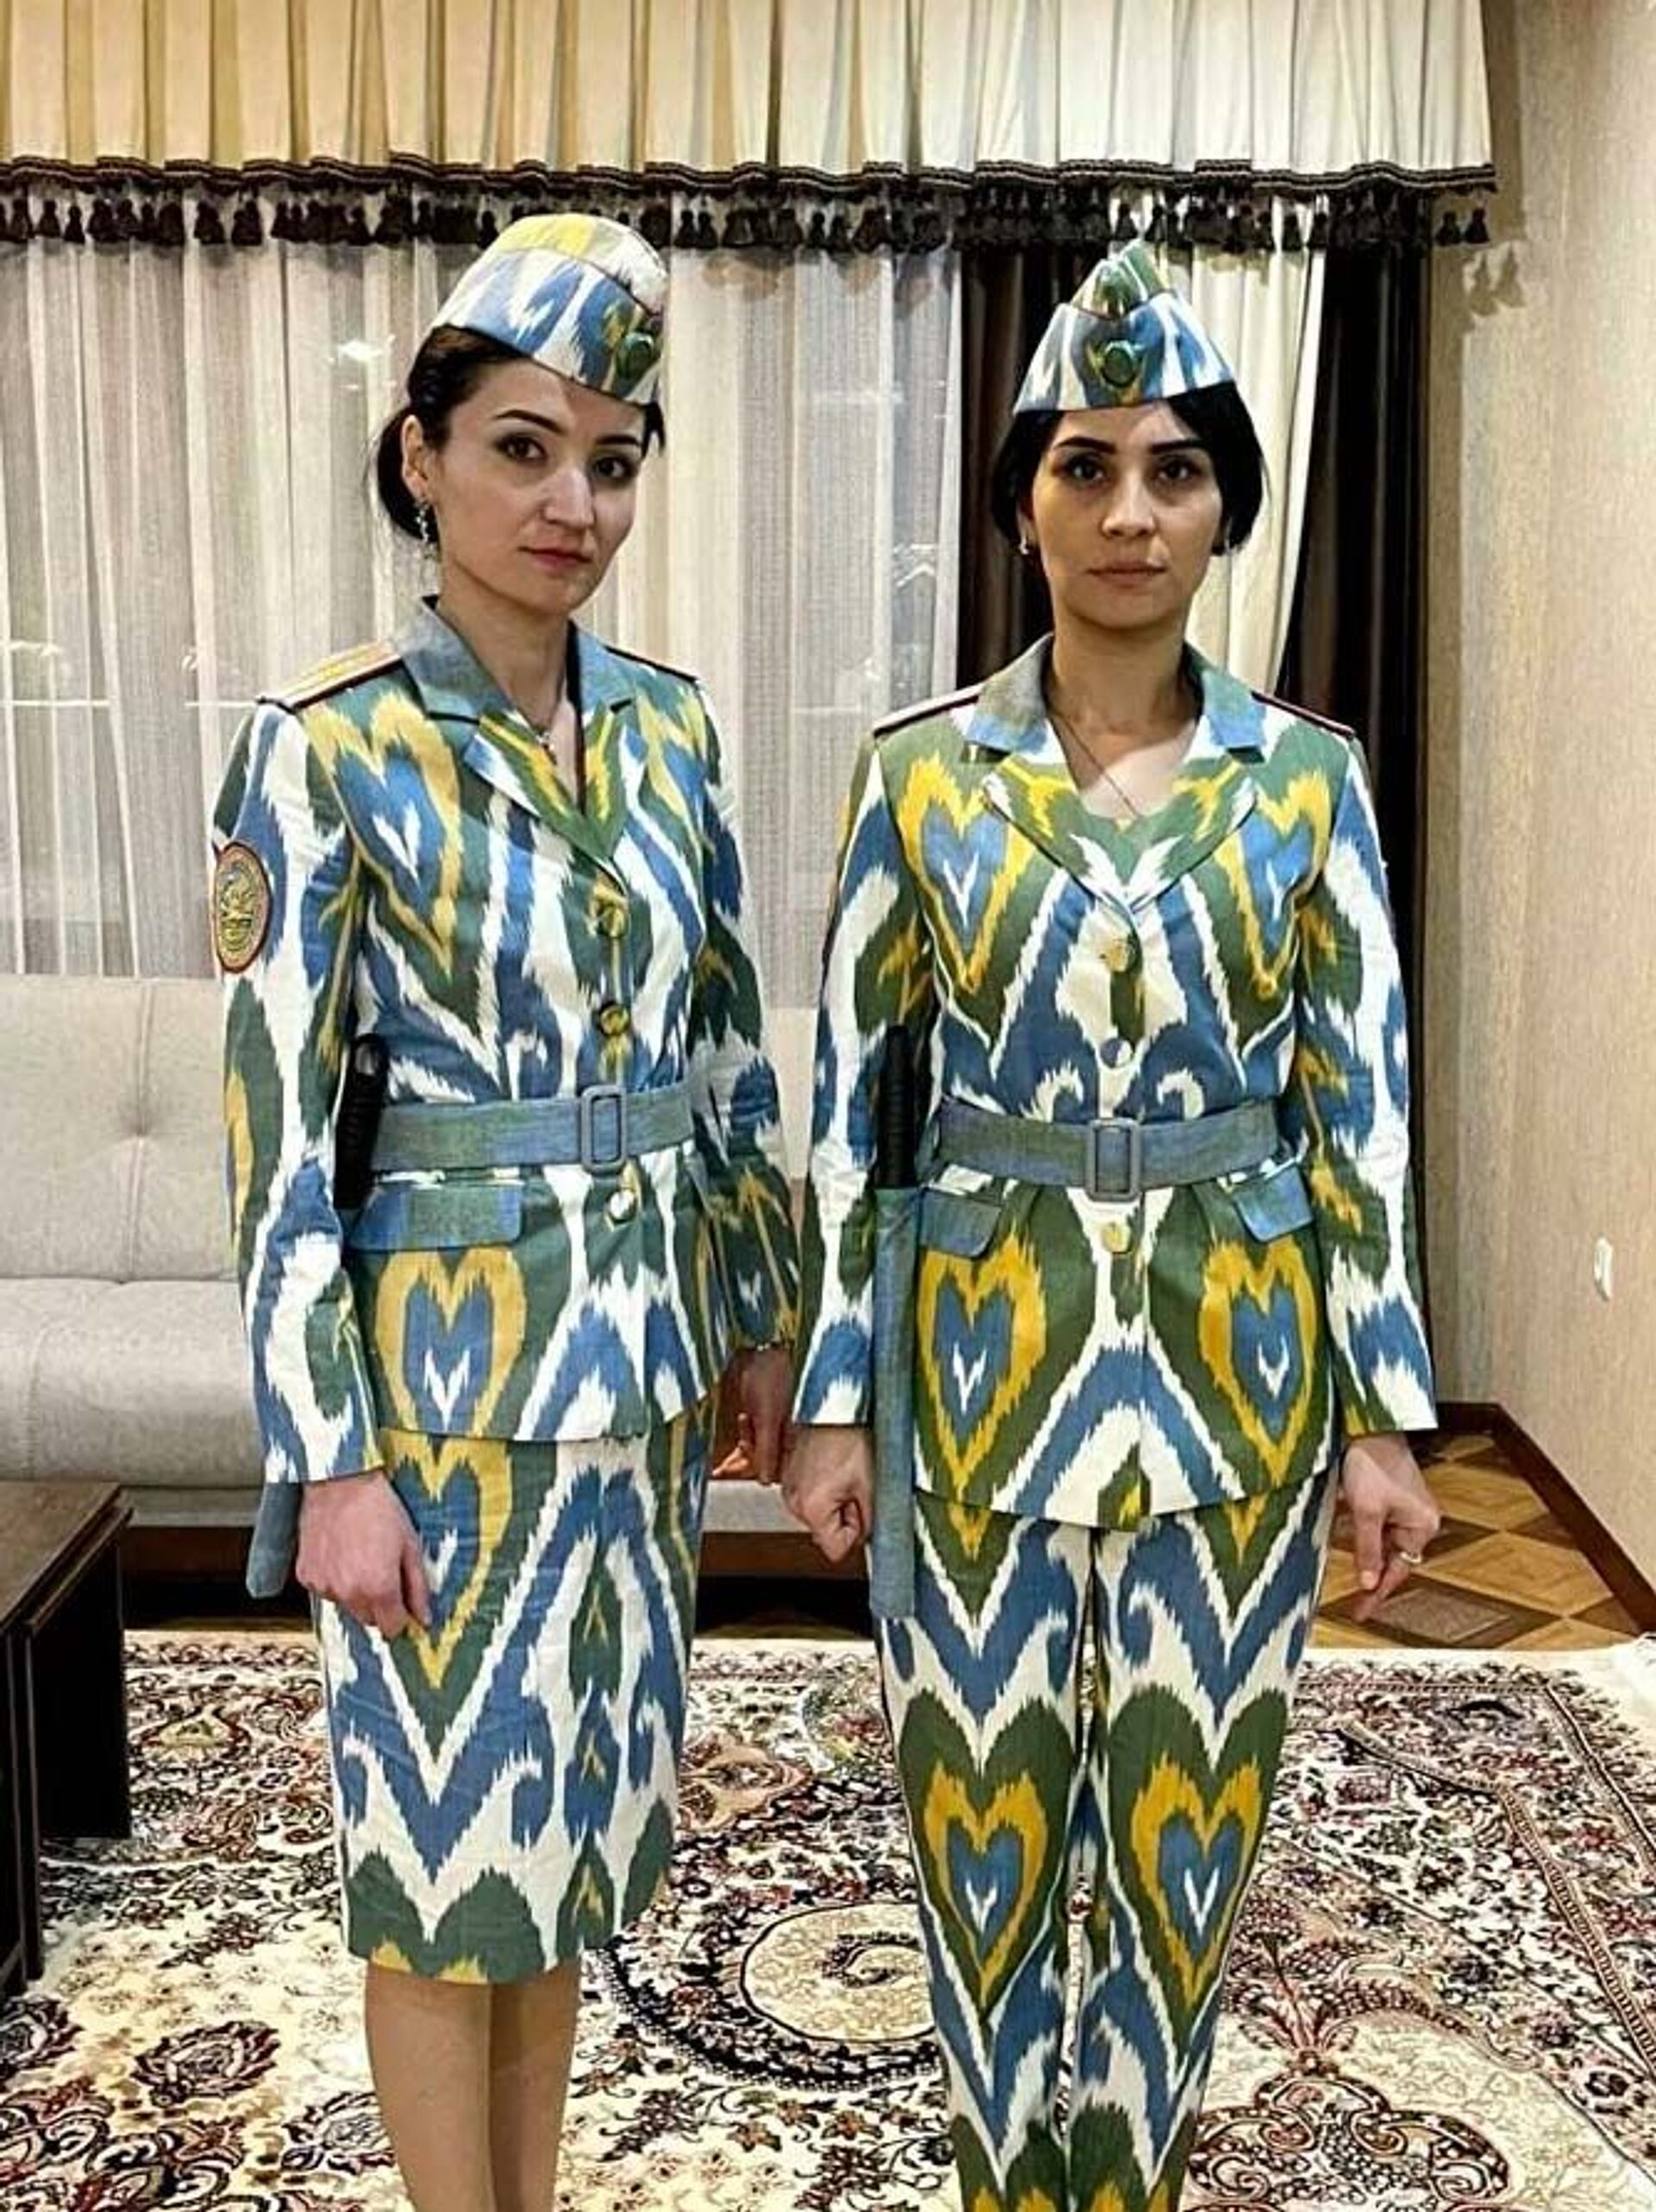 Дизайн новой милицейской формы для женщин в Таджикистане - Sputnik Кыргызстан, 1920, 16.12.2021